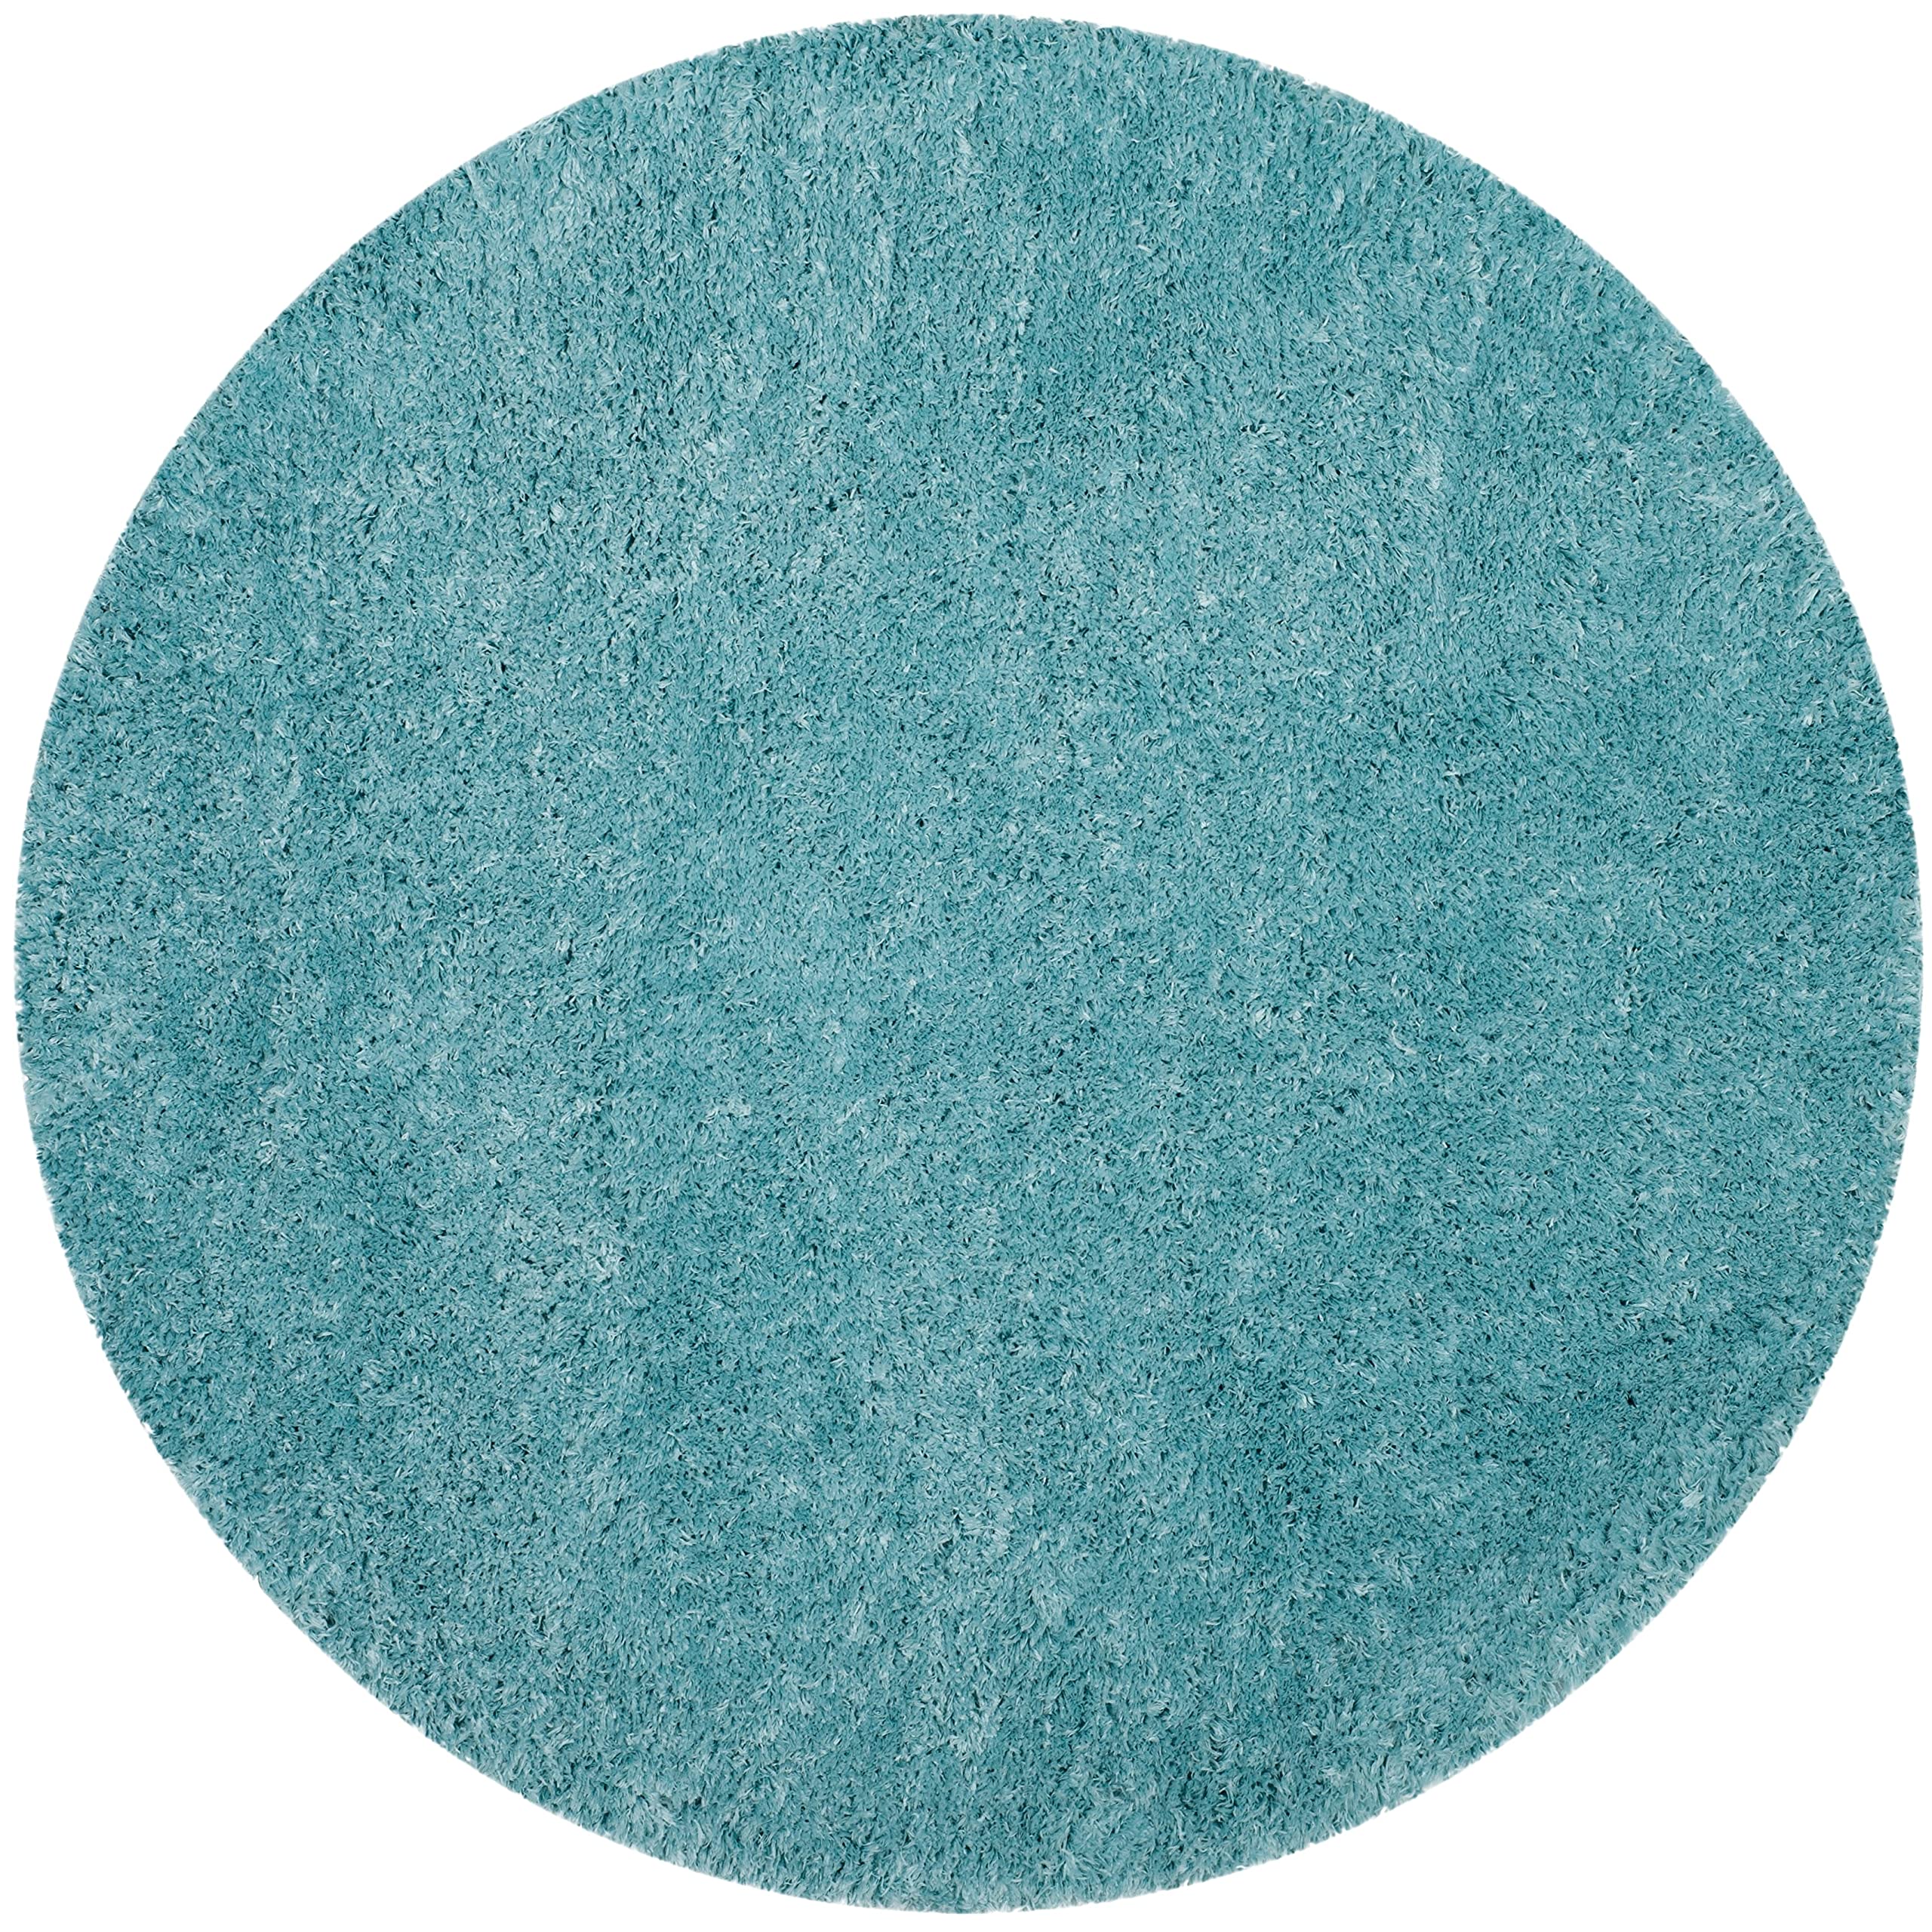  Safavieh Polar Shag 系列小地毯 - 5 英尺 1 英尺圆形，浅绿松石色，纯色迷人设计，不脱落且易于护理，3 英寸厚，非常适合客厅、卧室的人流密集区域 (PSG800T)...